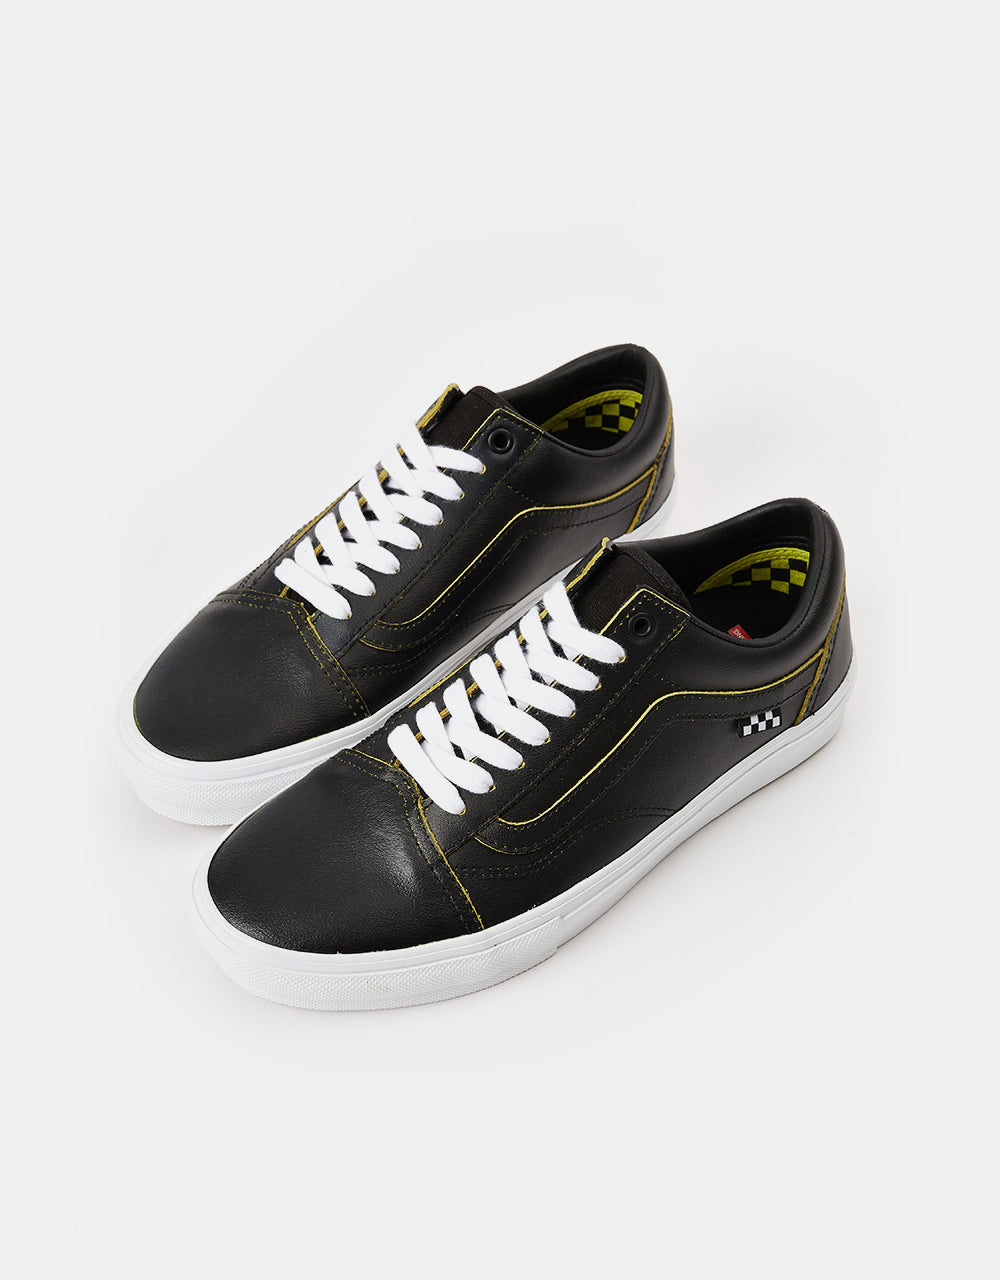 Vans Skate Old Skool R1 UK Exclusive Skate Shoes - (Wearaway) Black/Tr –  Route One